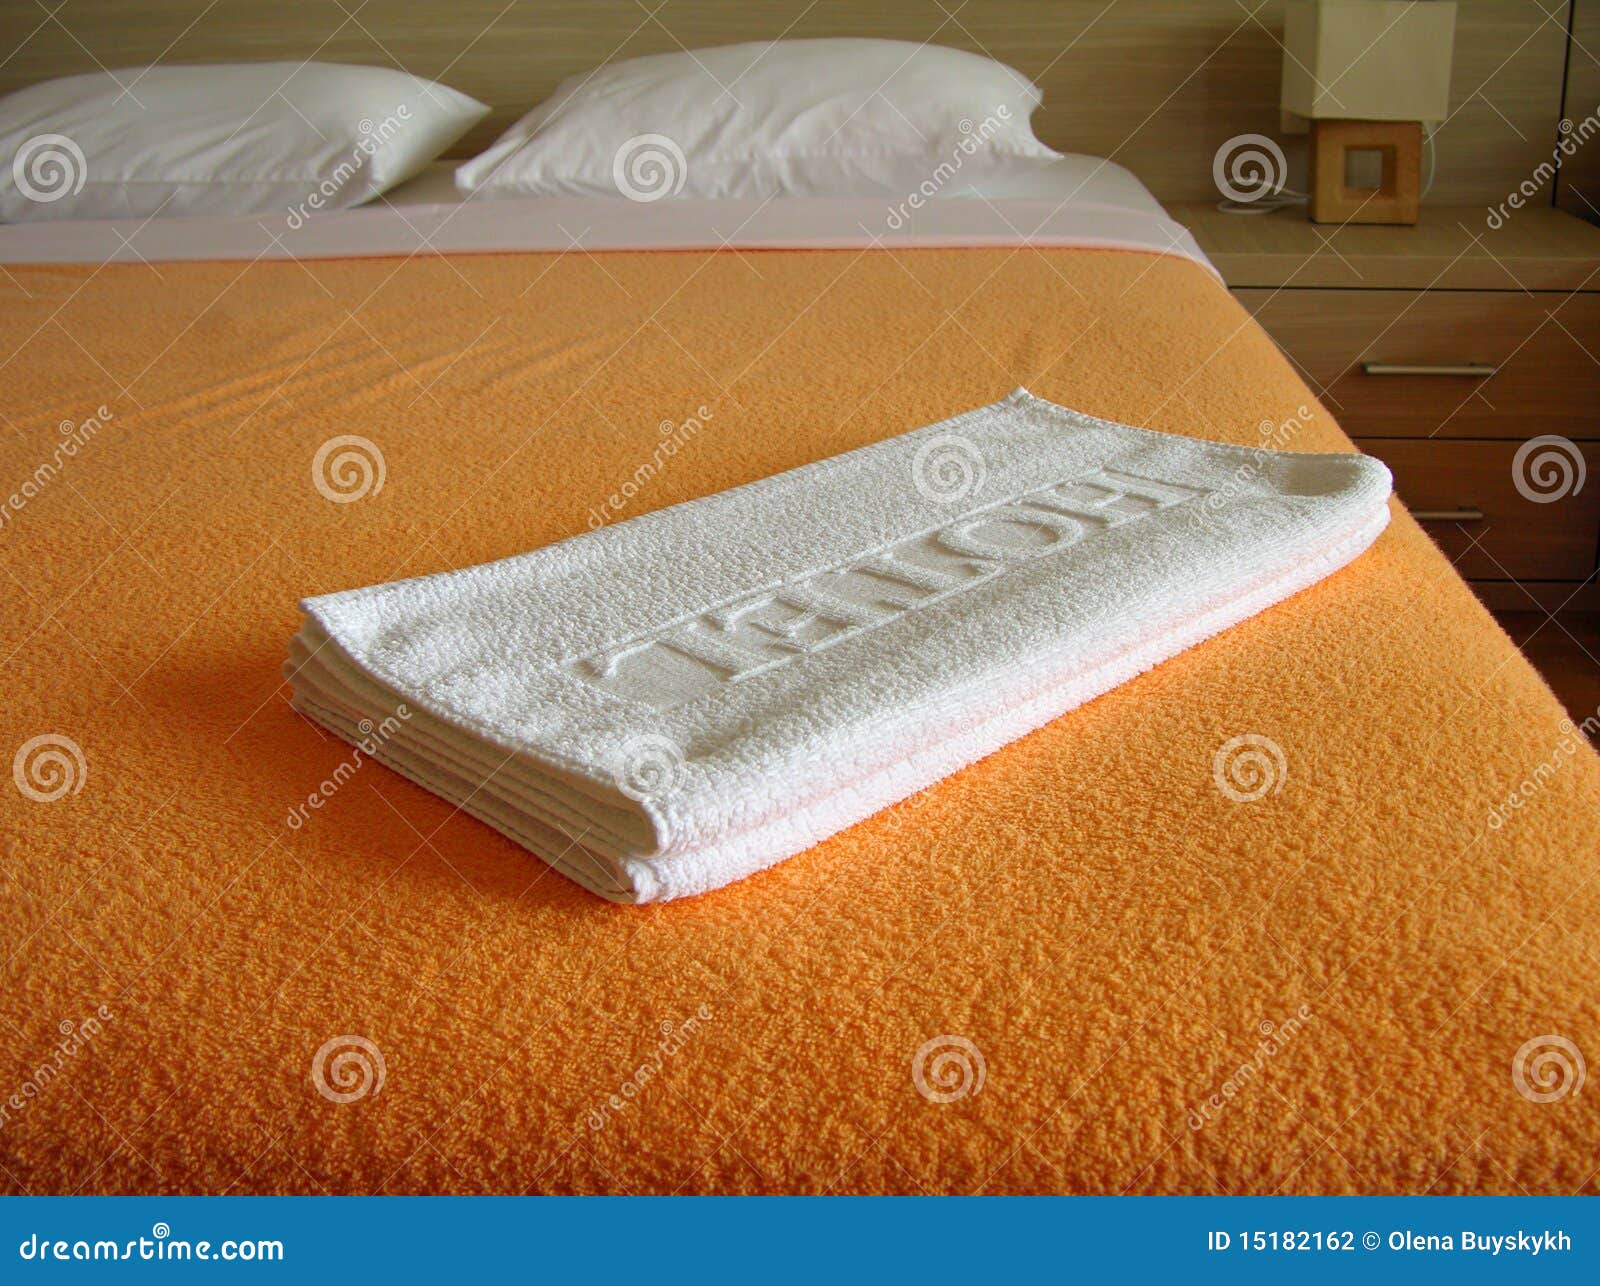 Полотенце на кровати. Полотенца на кровати. Полотенца для гостиниц. Полотенца в гостиничном номере. Полотенце отель кровать.